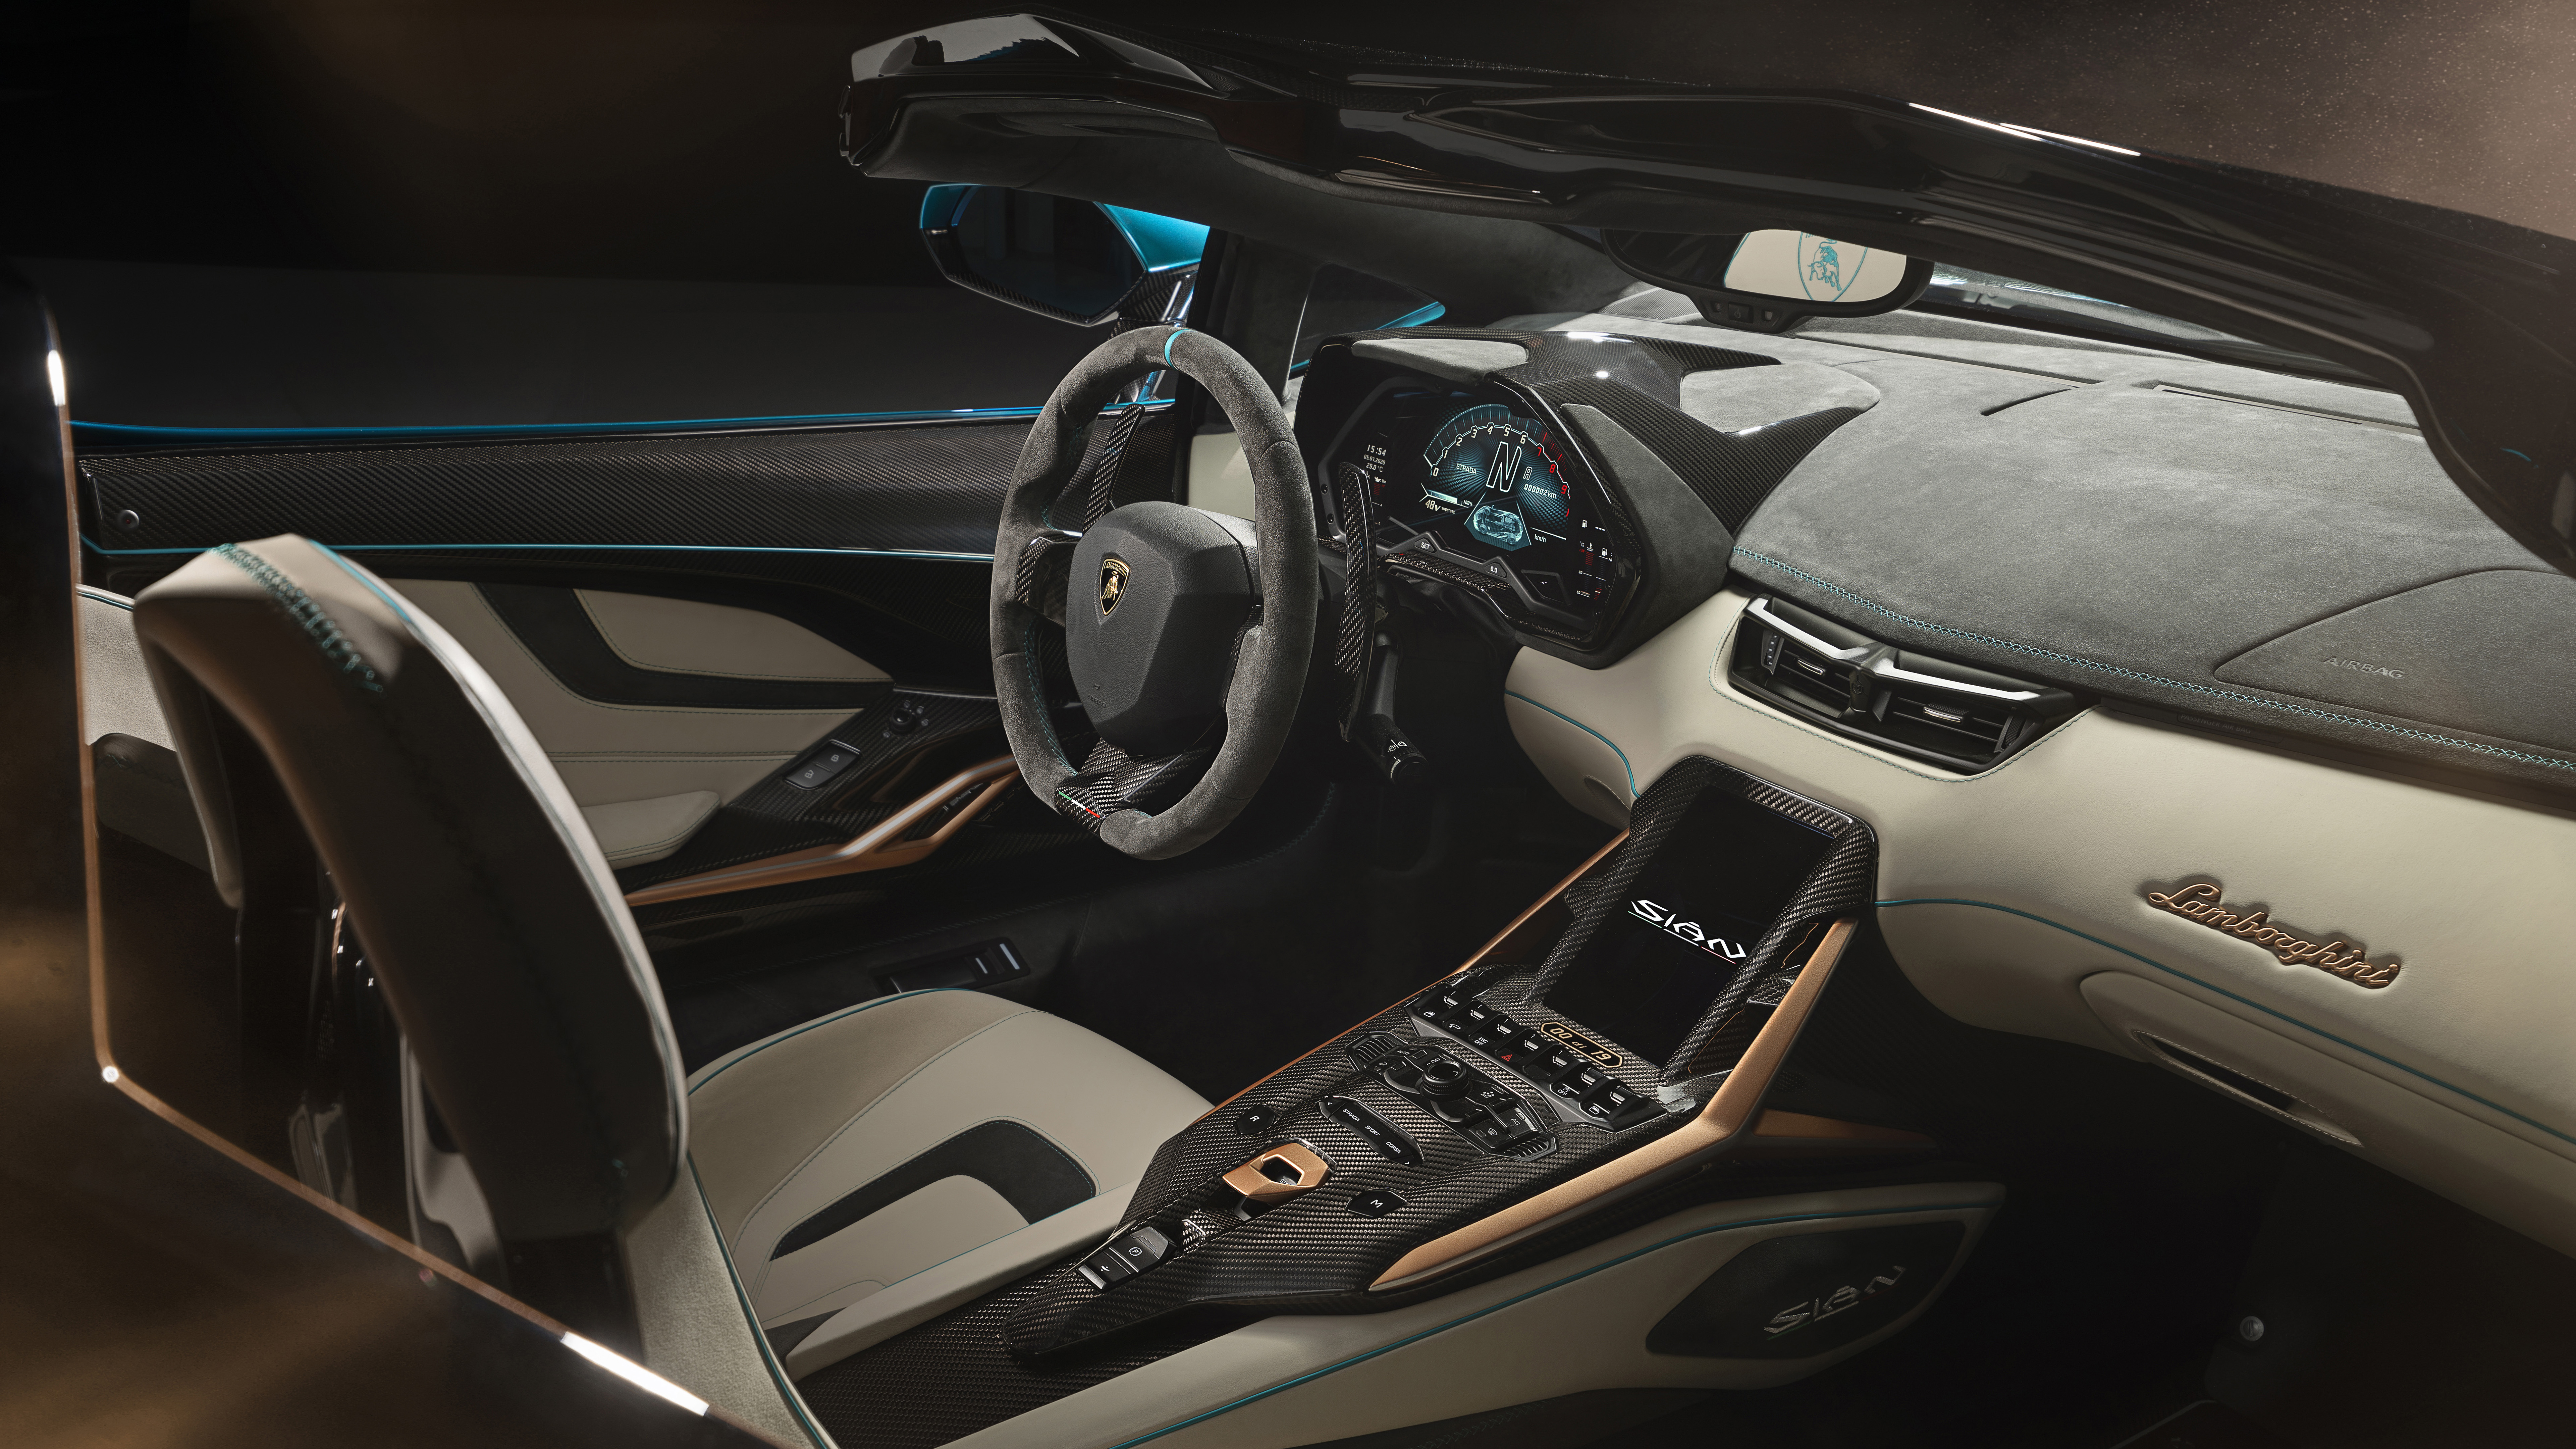 Lamborghini Sian Roadster 2020 4k 8k Interior Wallpaper Hd Car Wallpapers Id 15155